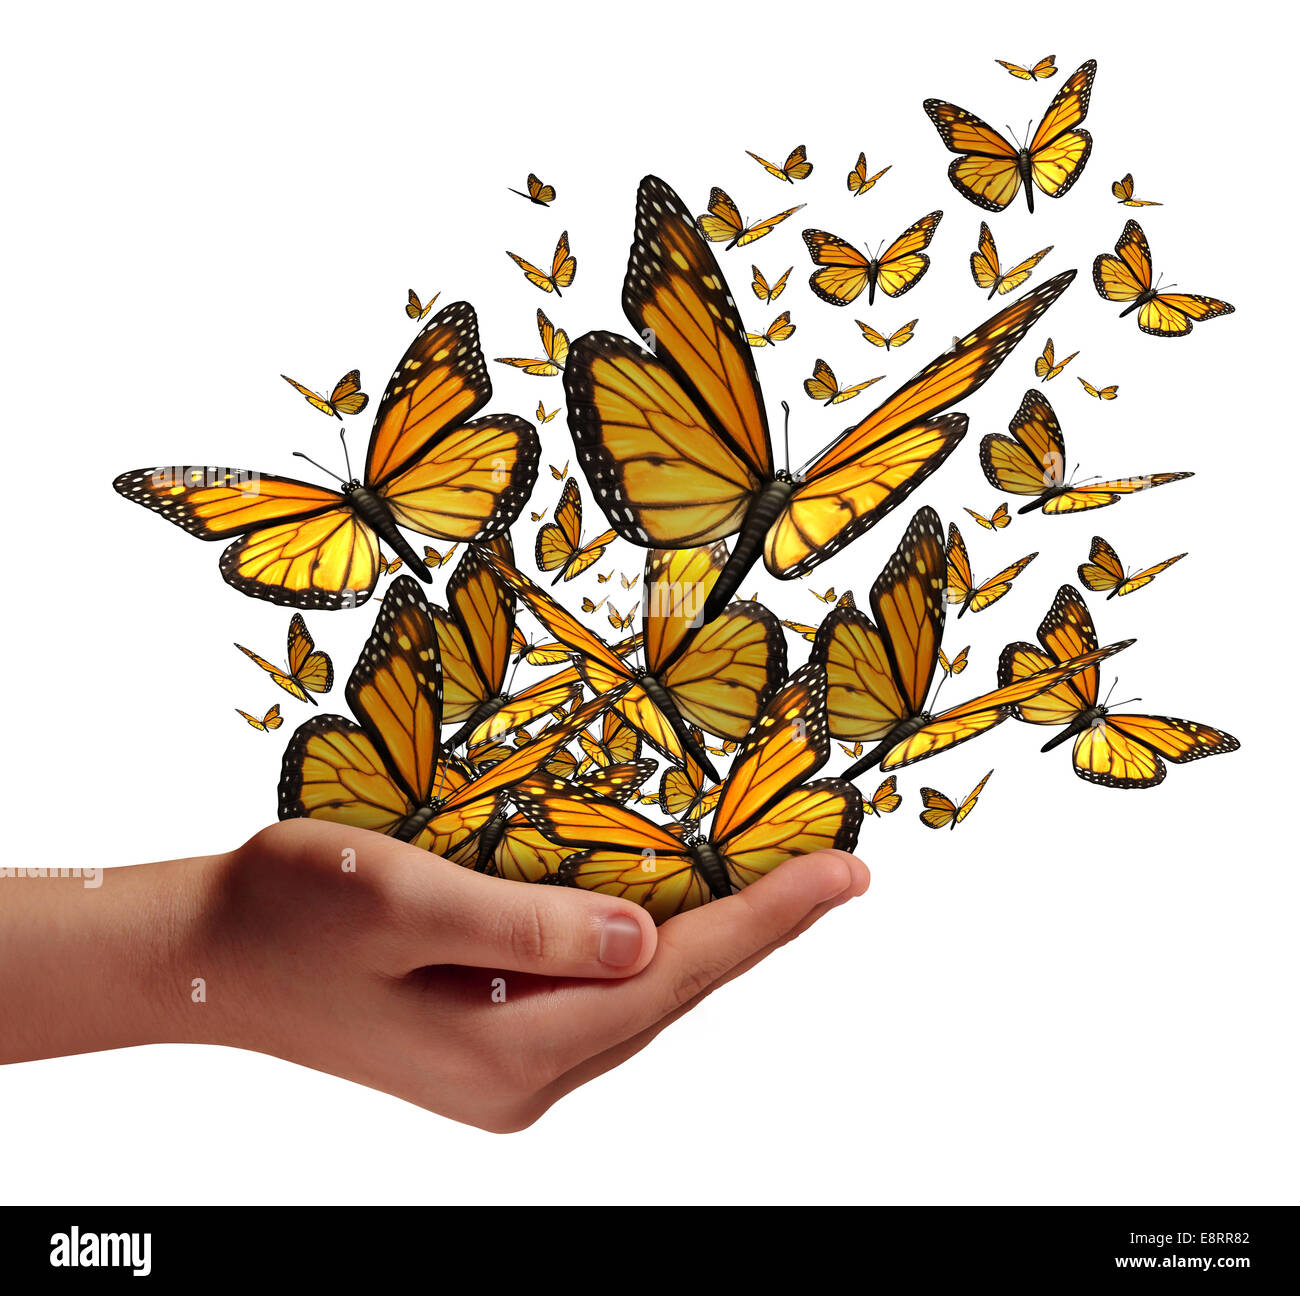 Hoffnung und Freiheit Konzept wie eine menschliche Hand loslassen eine Gruppe von Schmetterlingen als Symbol für die Bildung Kommunikation und Verbreitung Stockfoto